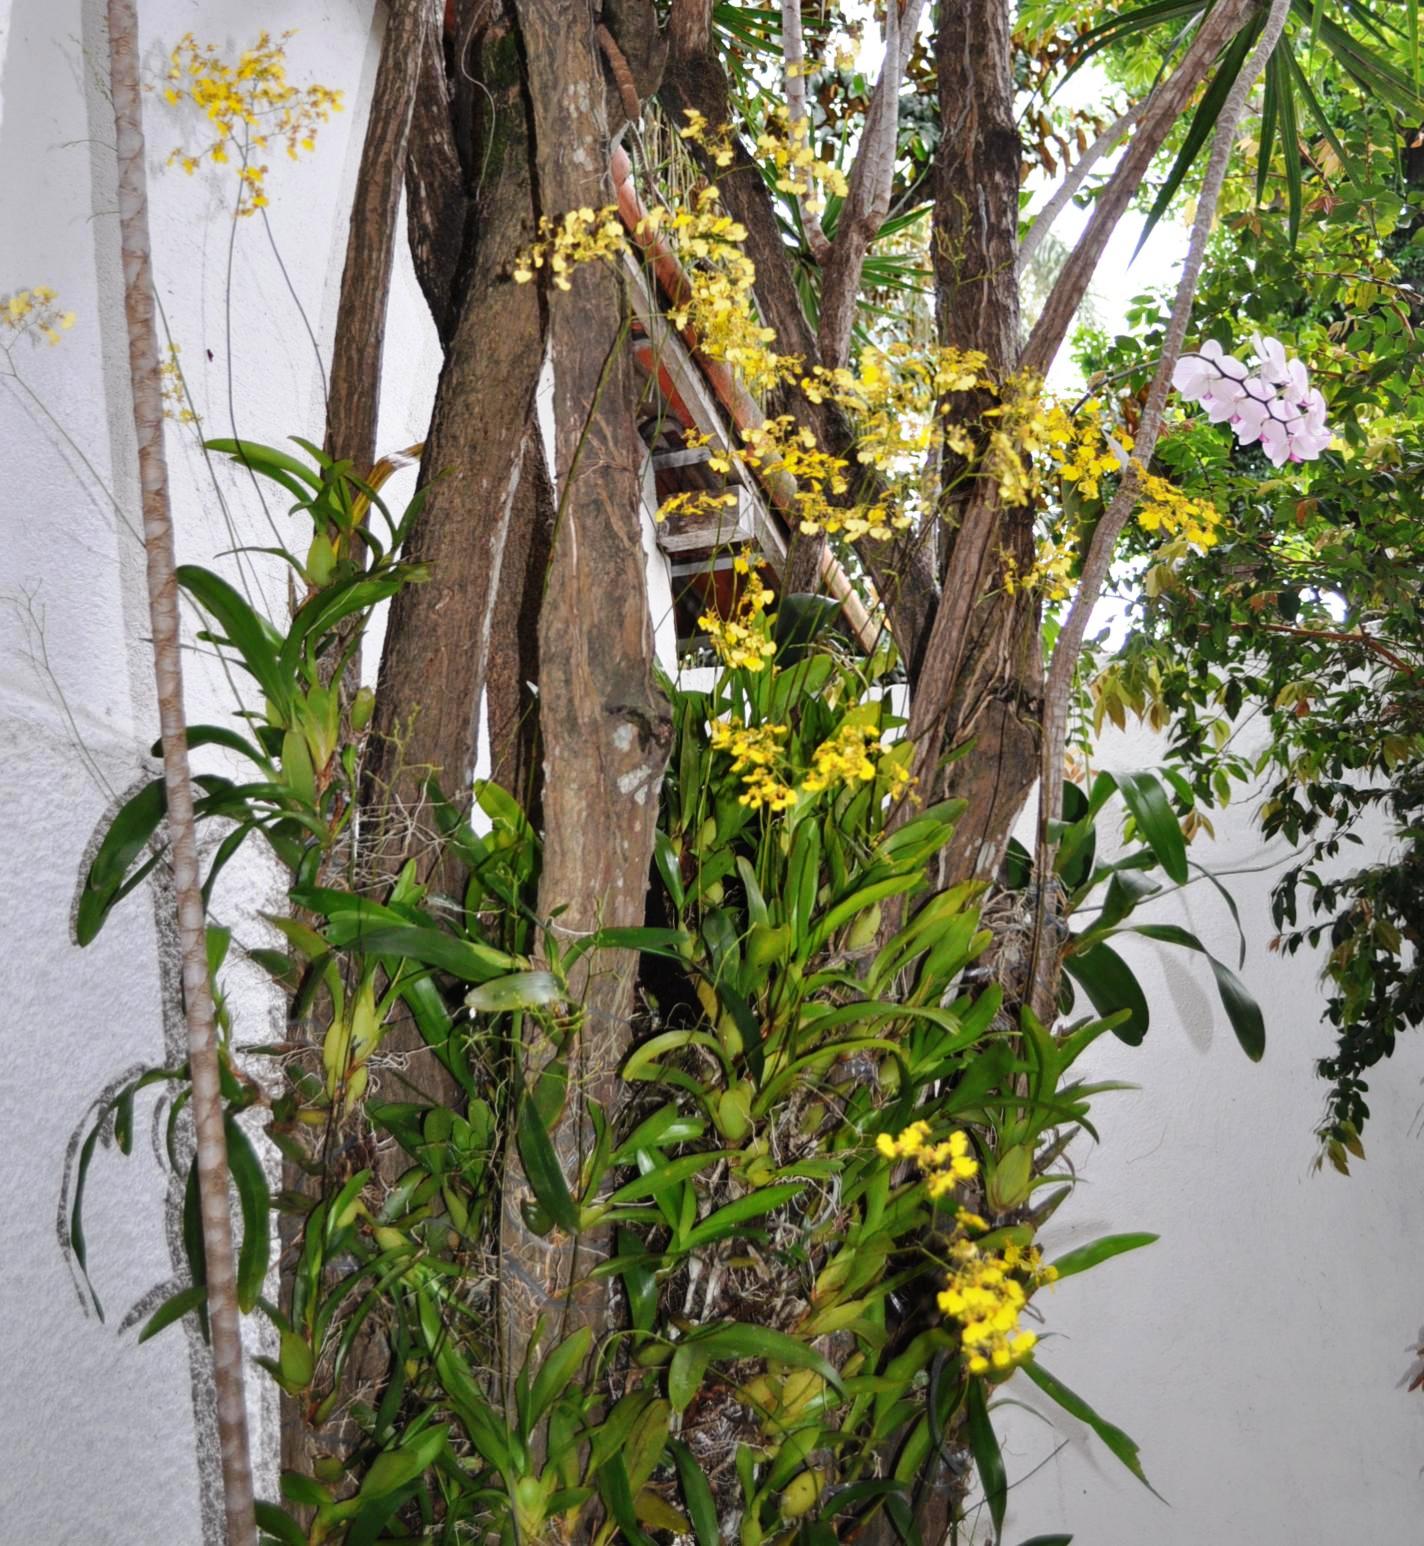 Paixão por orquídeas - Meu orquidário: Chuva de ouro - Oncidium